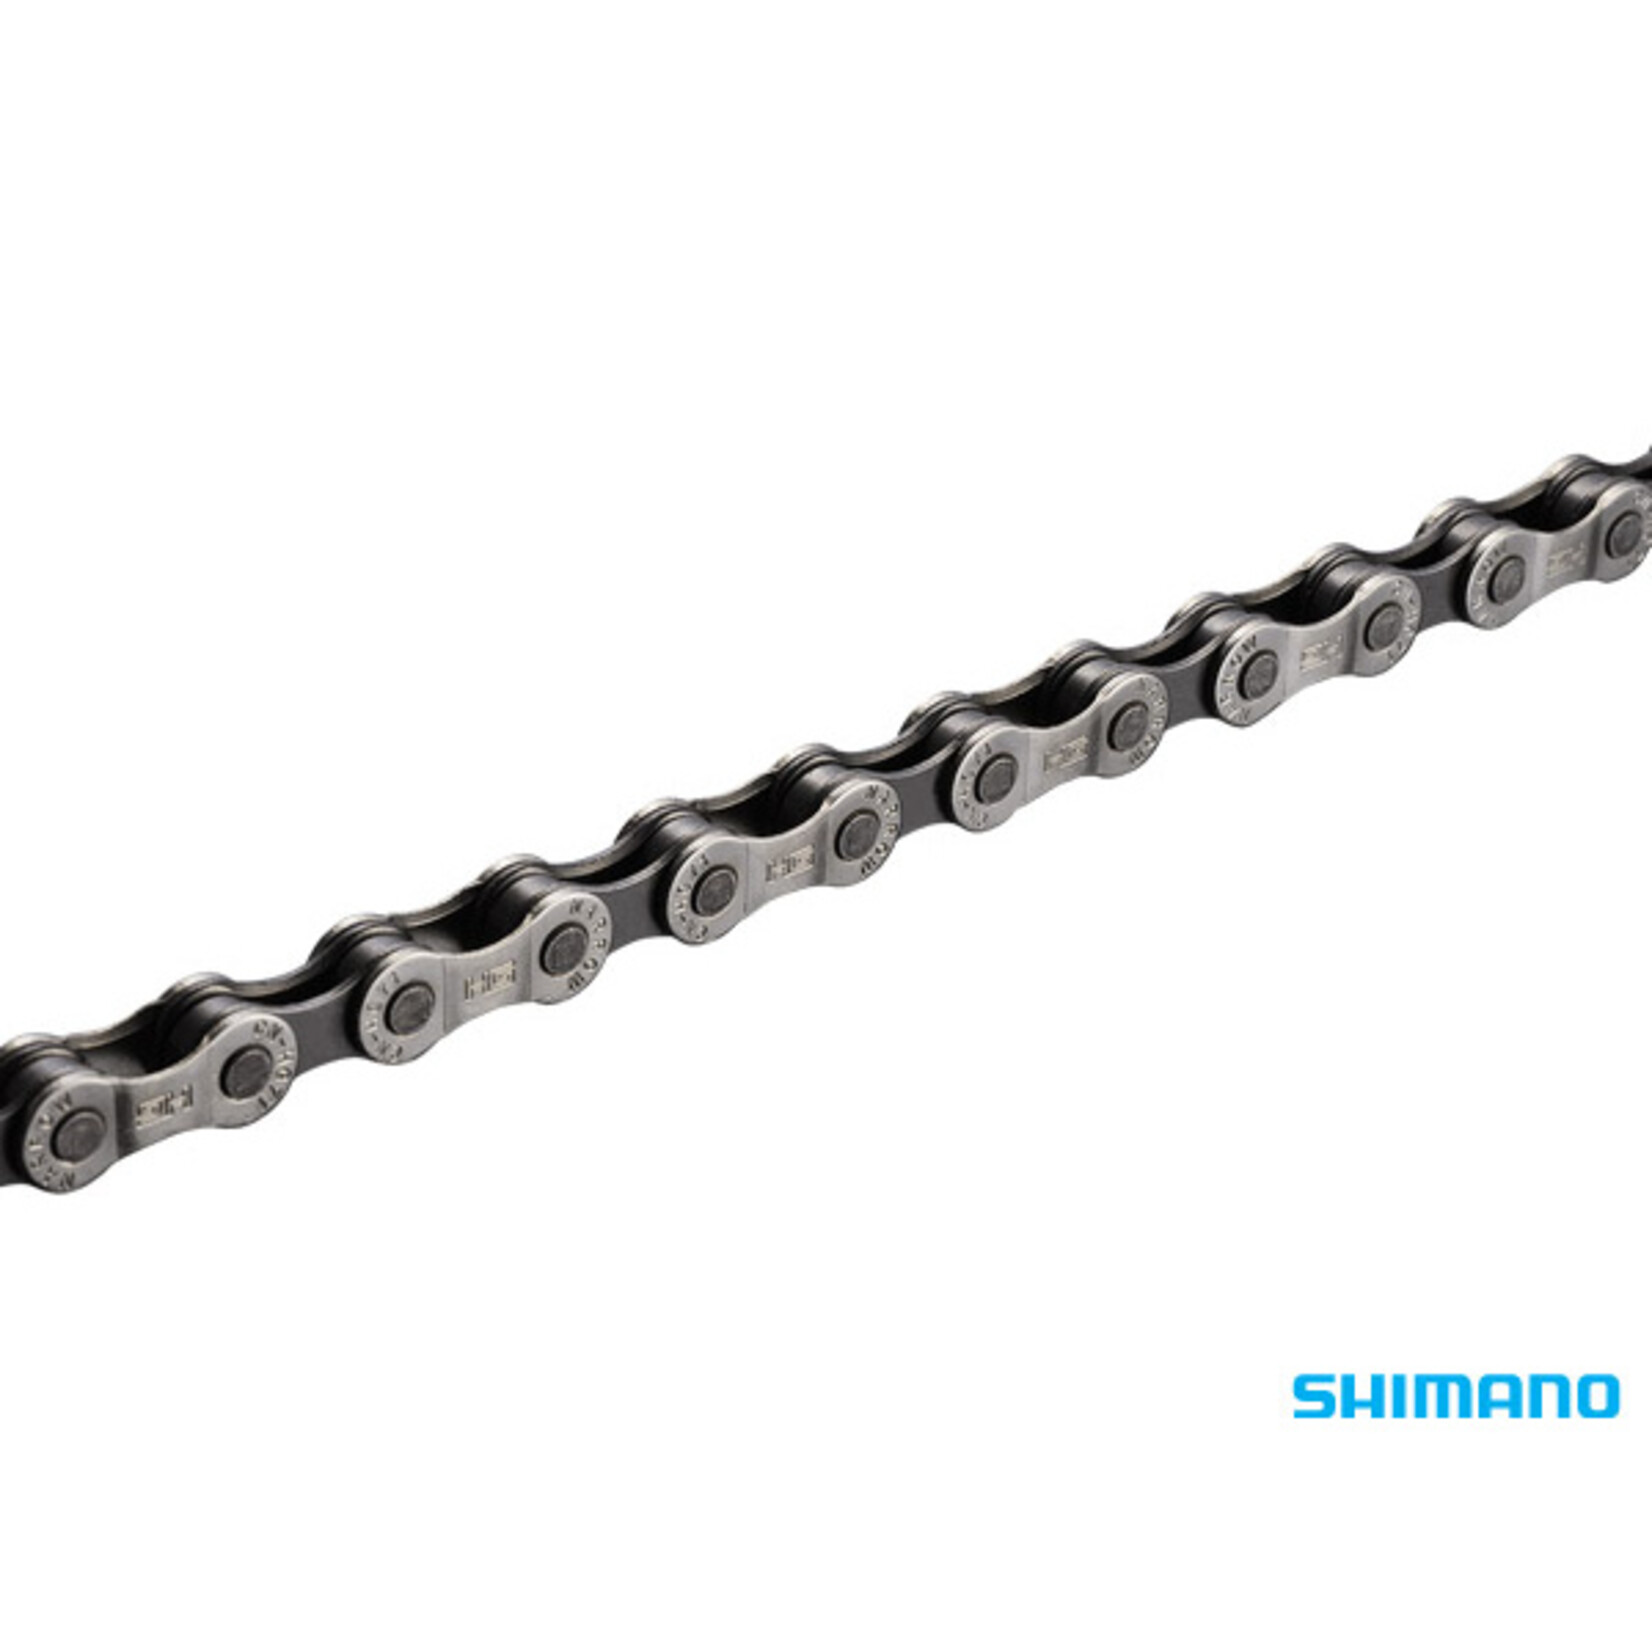 Shimano Shimano HG-71 6/7/8 Speed Chain